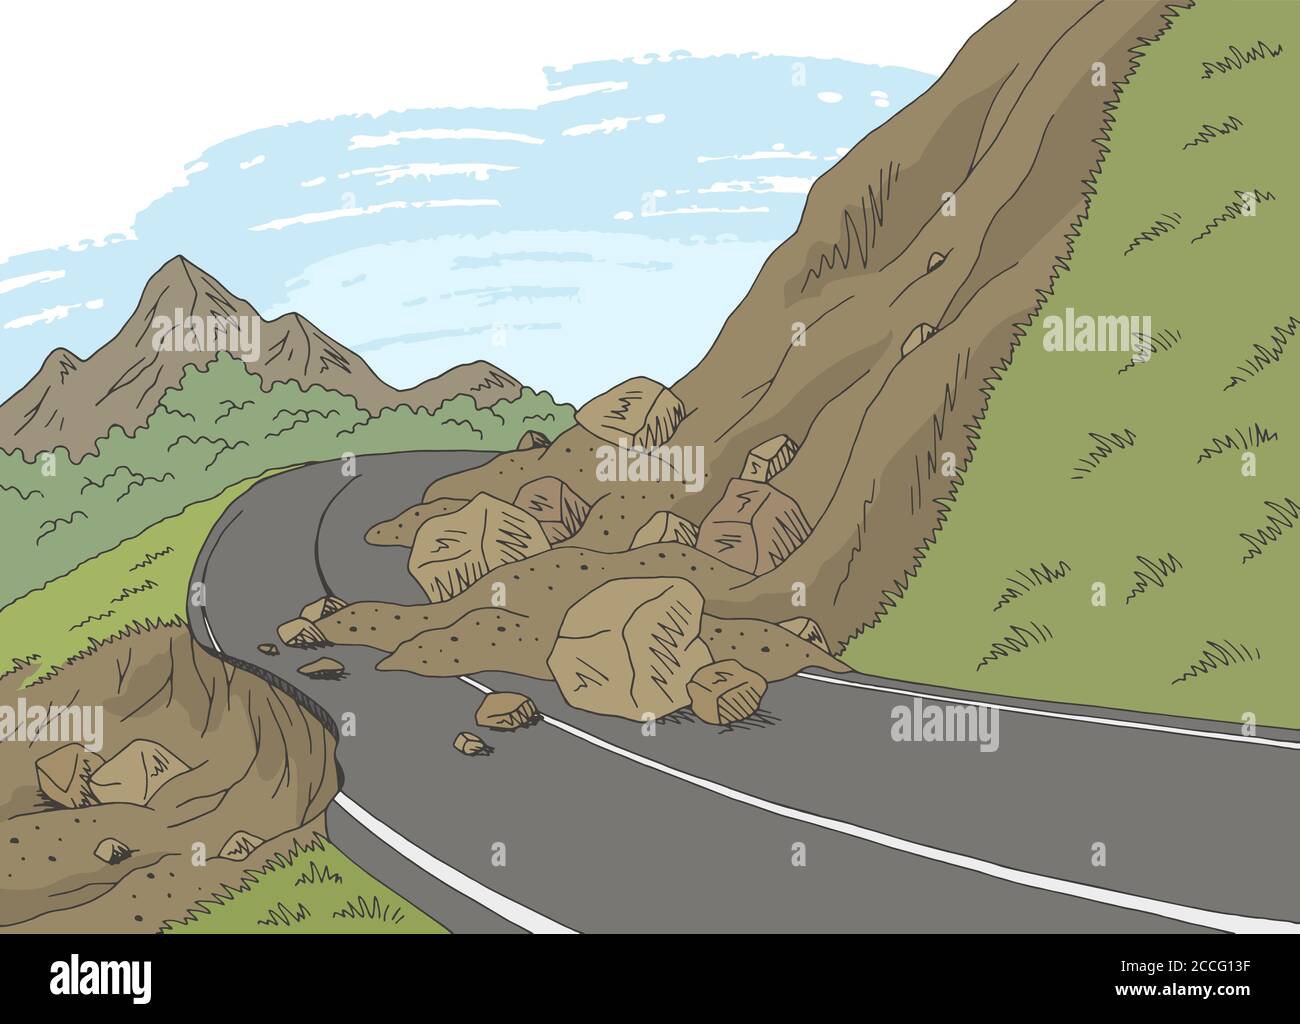 Landslide graphic color mountains landscape sketch illustration vector Stock Vector